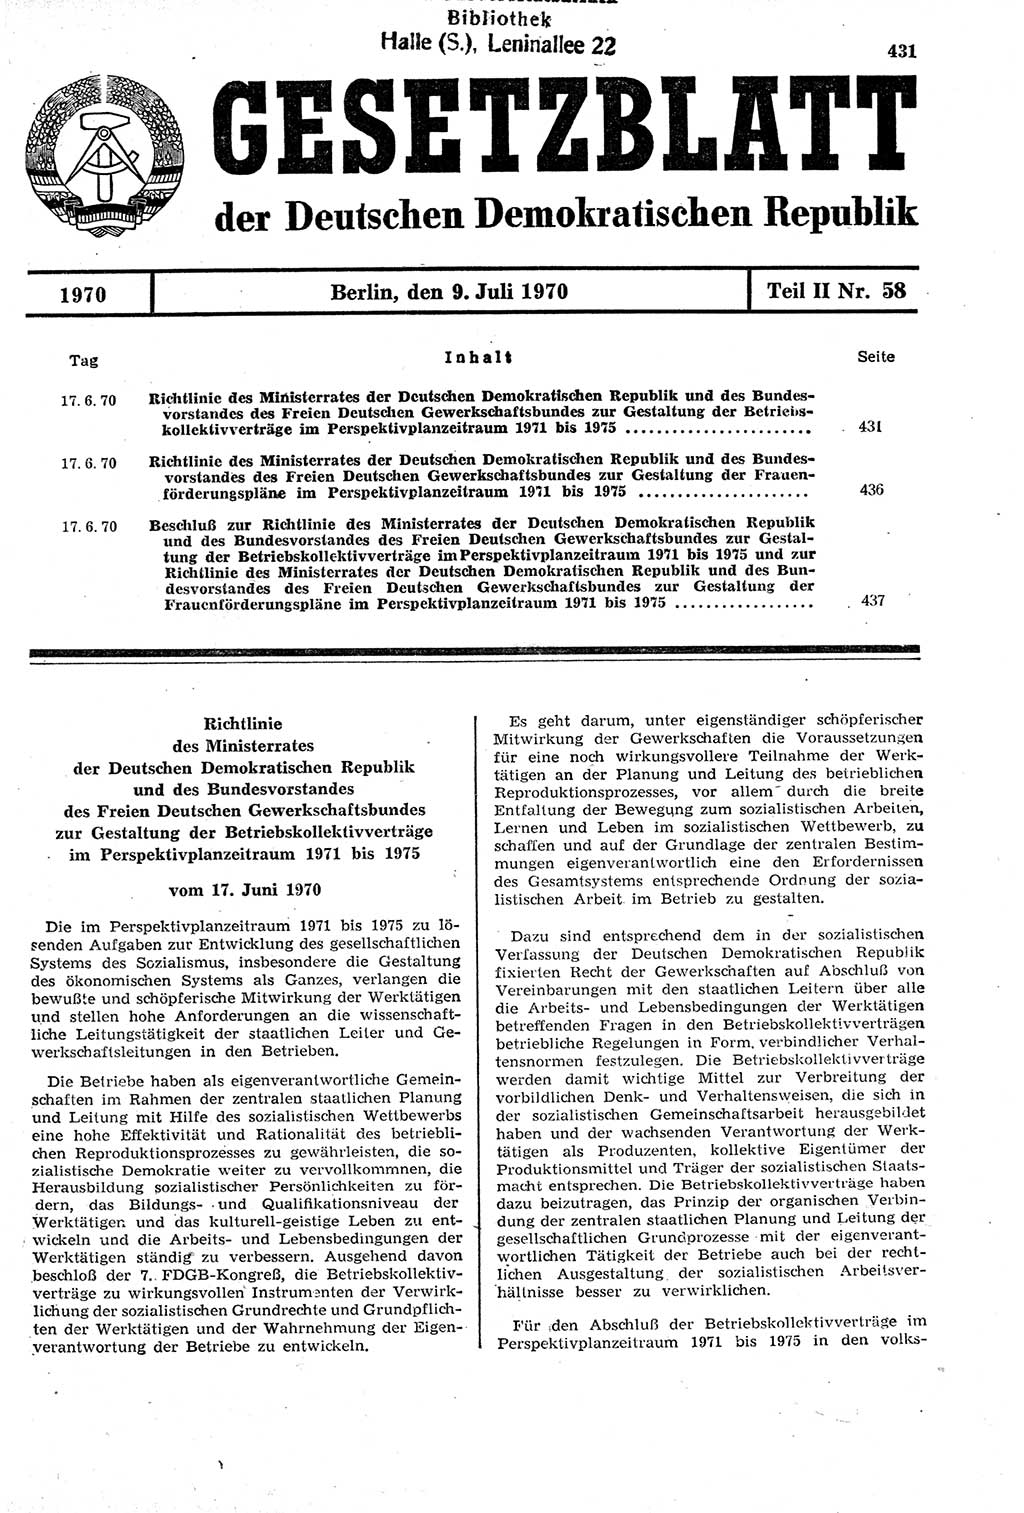 Gesetzblatt (GBl.) der Deutschen Demokratischen Republik (DDR) Teil ⅠⅠ 1970, Seite 431 (GBl. DDR ⅠⅠ 1970, S. 431)